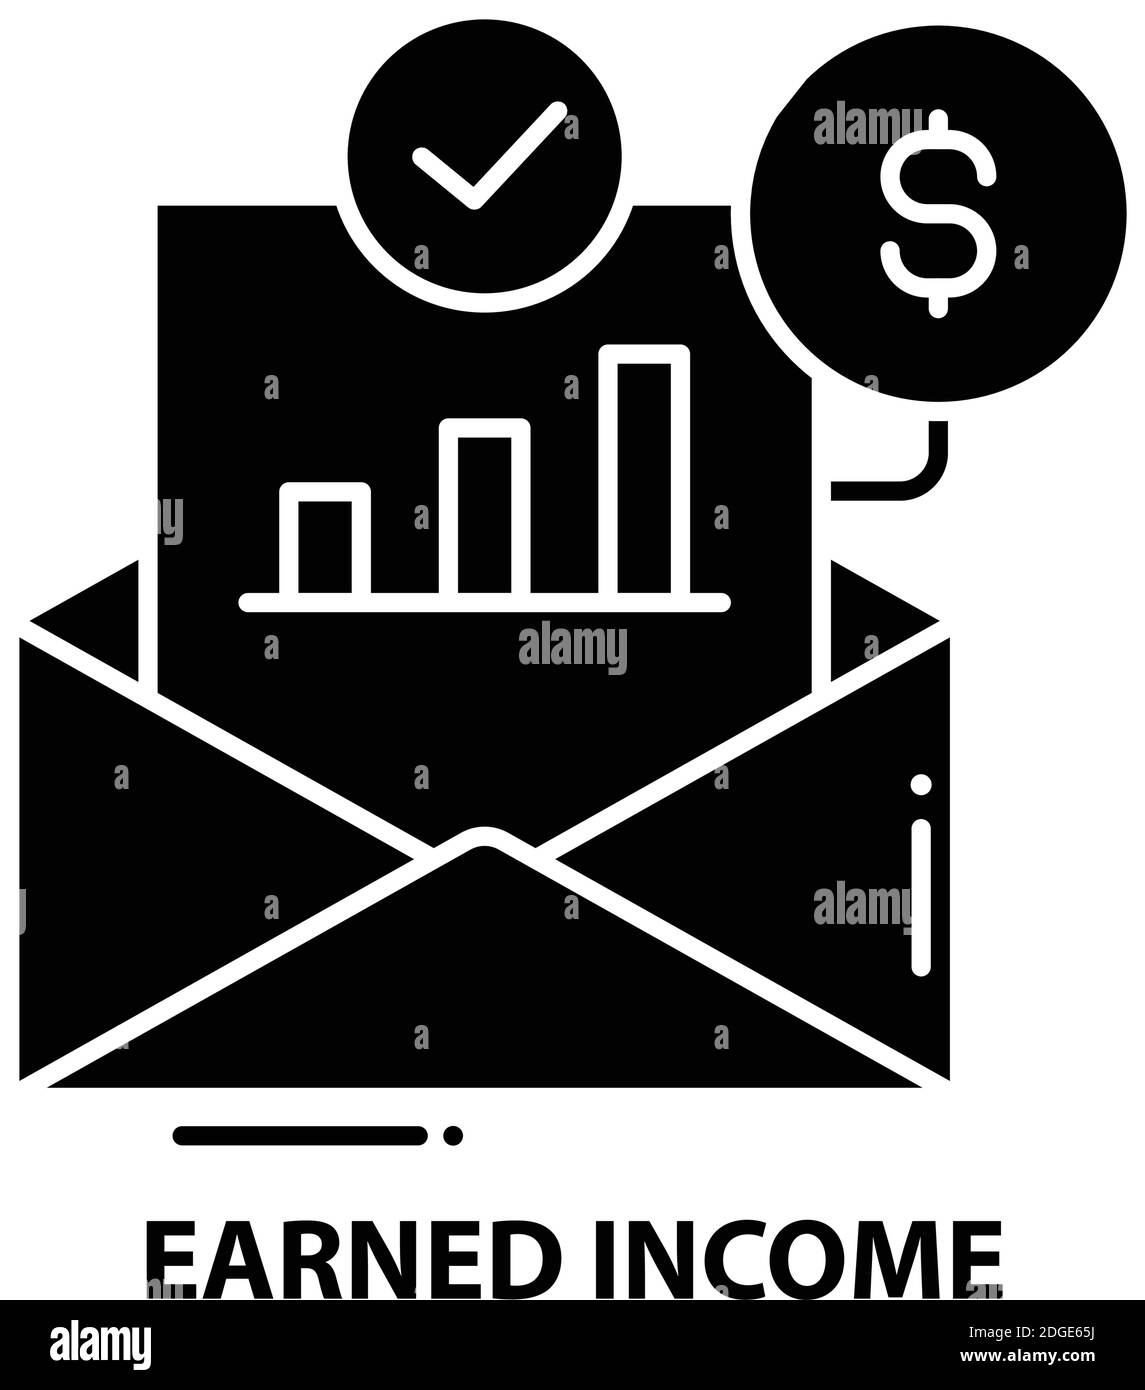 icona del reddito guadagnato, segno vettoriale nero con tratti modificabili, illustrazione concettuale Illustrazione Vettoriale